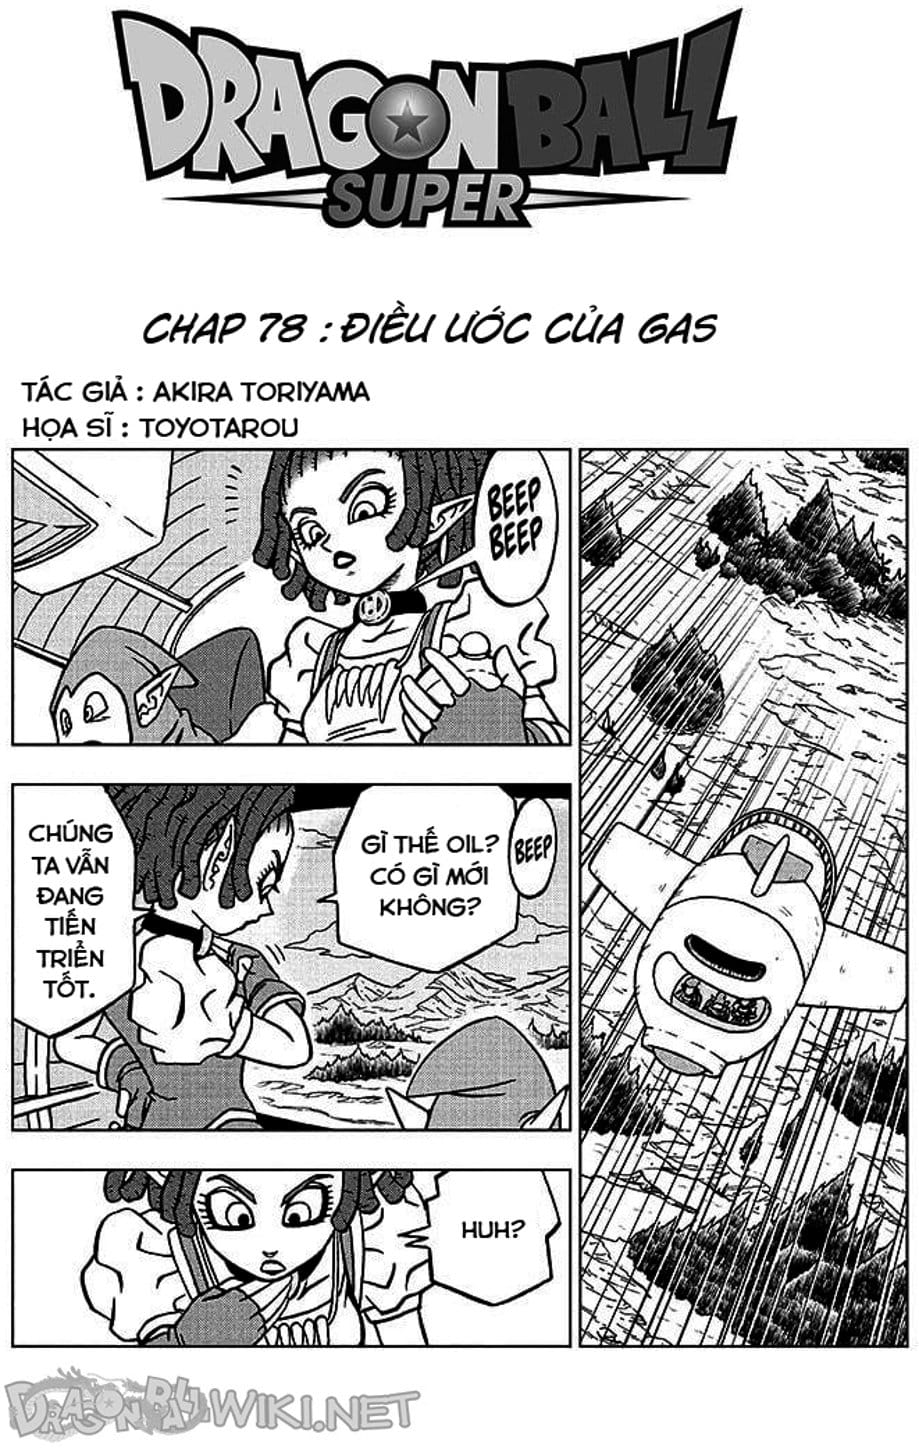 Truyện Tranh Truy Tìm Ngọc Rồng Siêu Cấp - Dragon Ball Super trang 3111